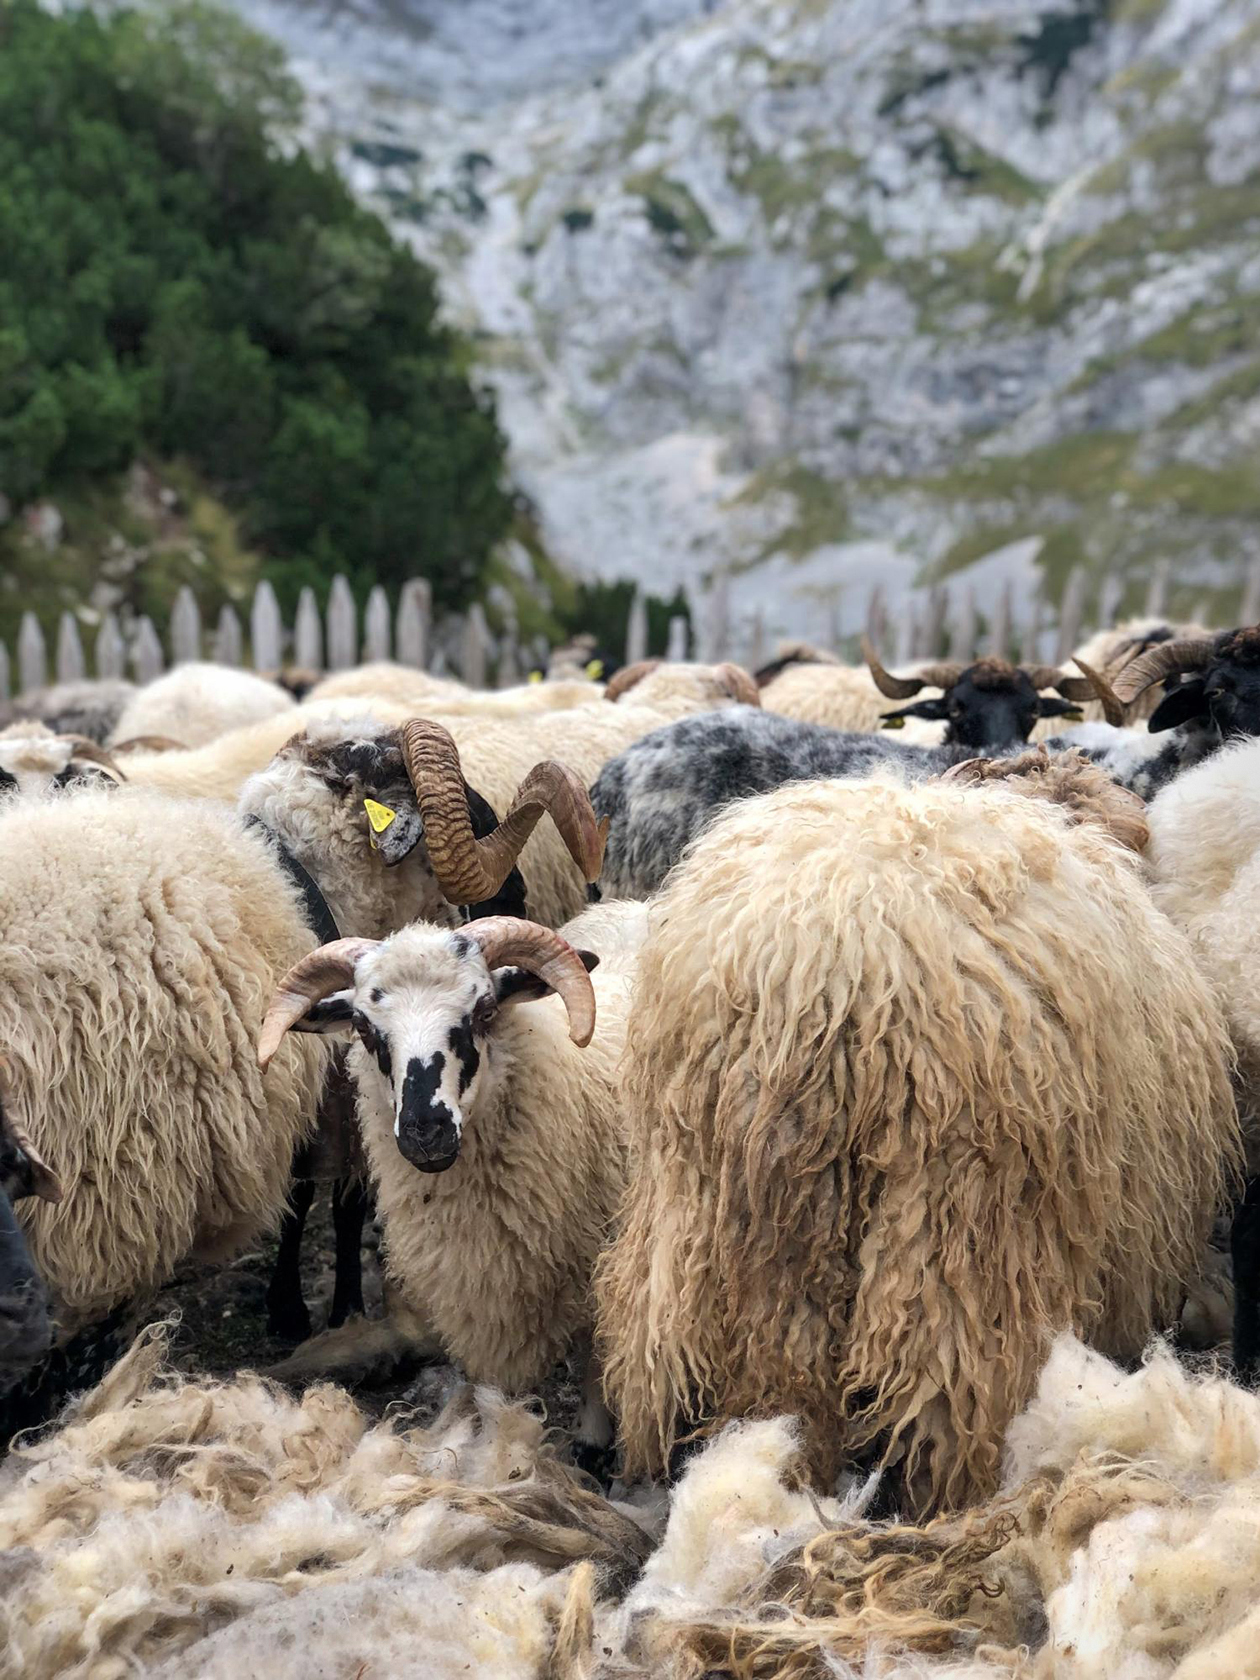 В широких долинах местные пастухи проводят летний сезон, неспешно выгуливая стада овец. Они радушно приветствуют и помогают советами, могут пригласить на чай